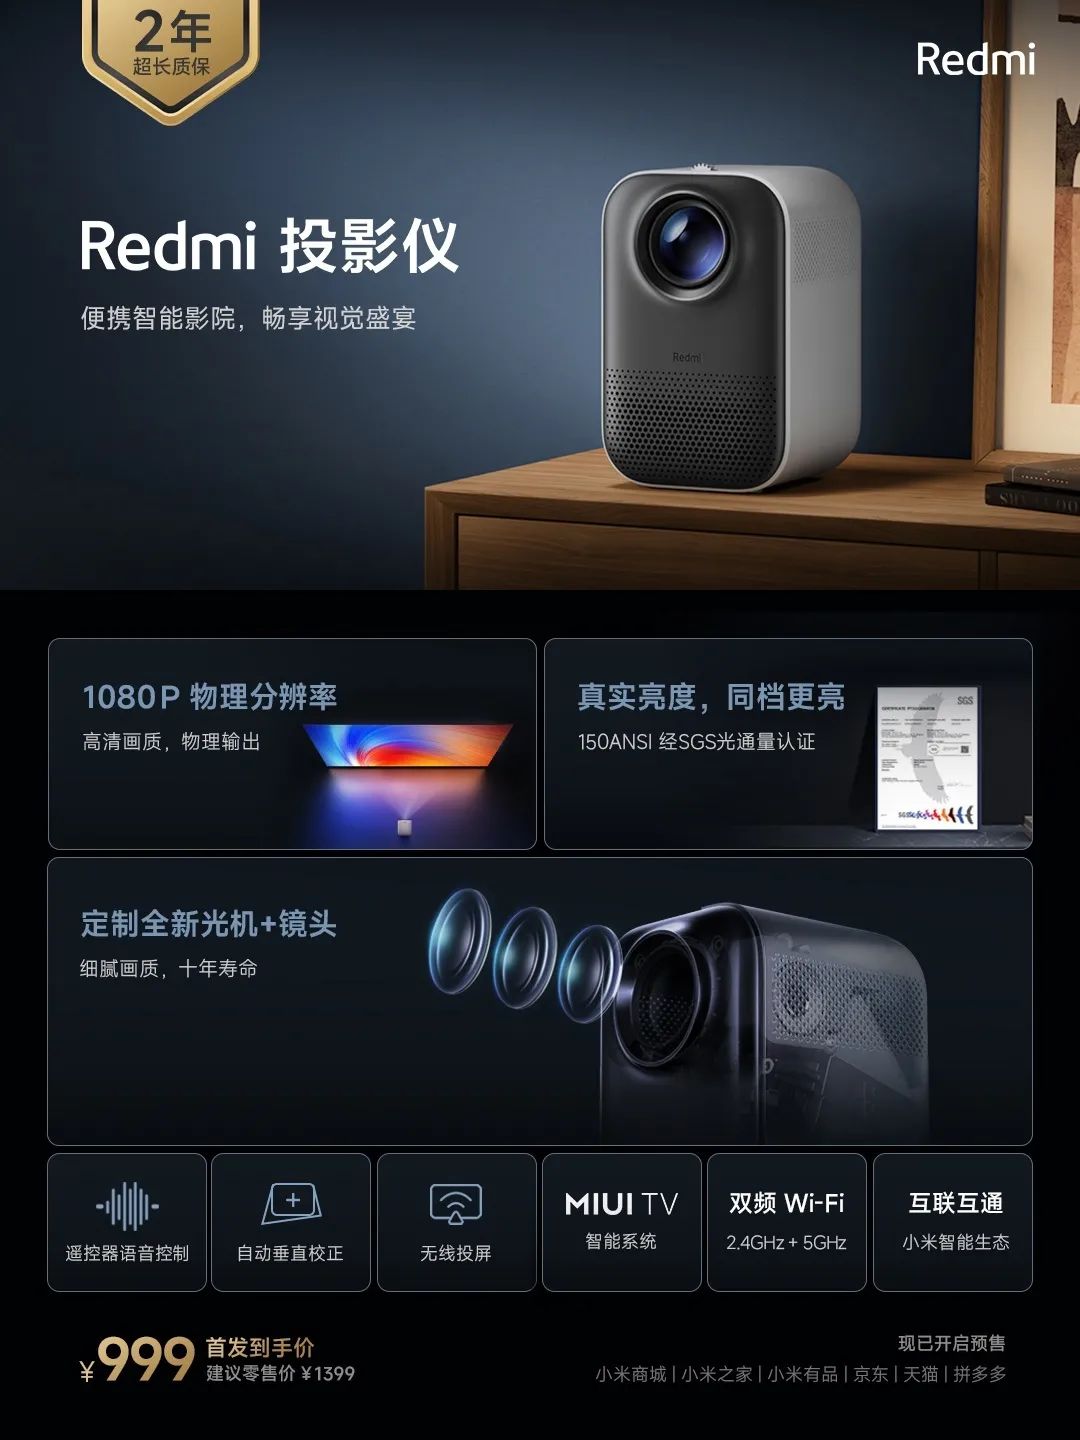 今日热闻 | Redmi系列新品发布、骁龙8 Gen2曝光、马斯克收购Twitter